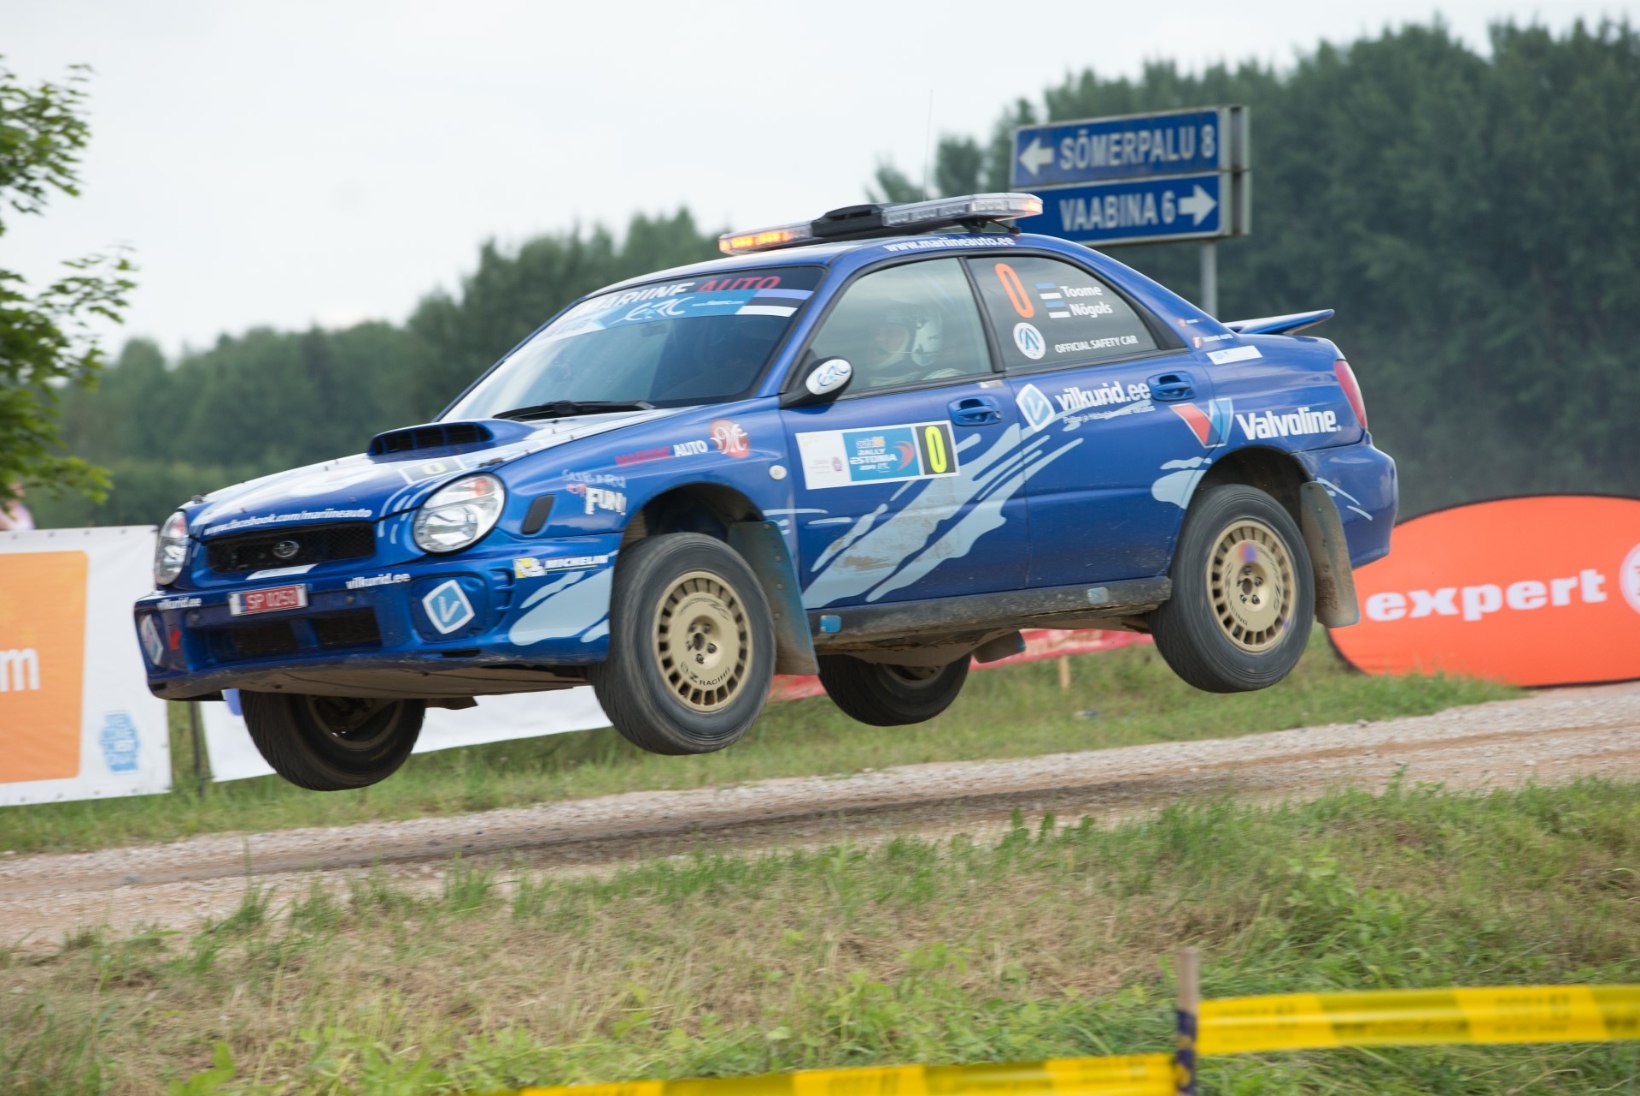 FOTOD: Ott Tänak võttis Rally Estonial kindla võidu, Timmu Kõrge lõpetas kolmandana